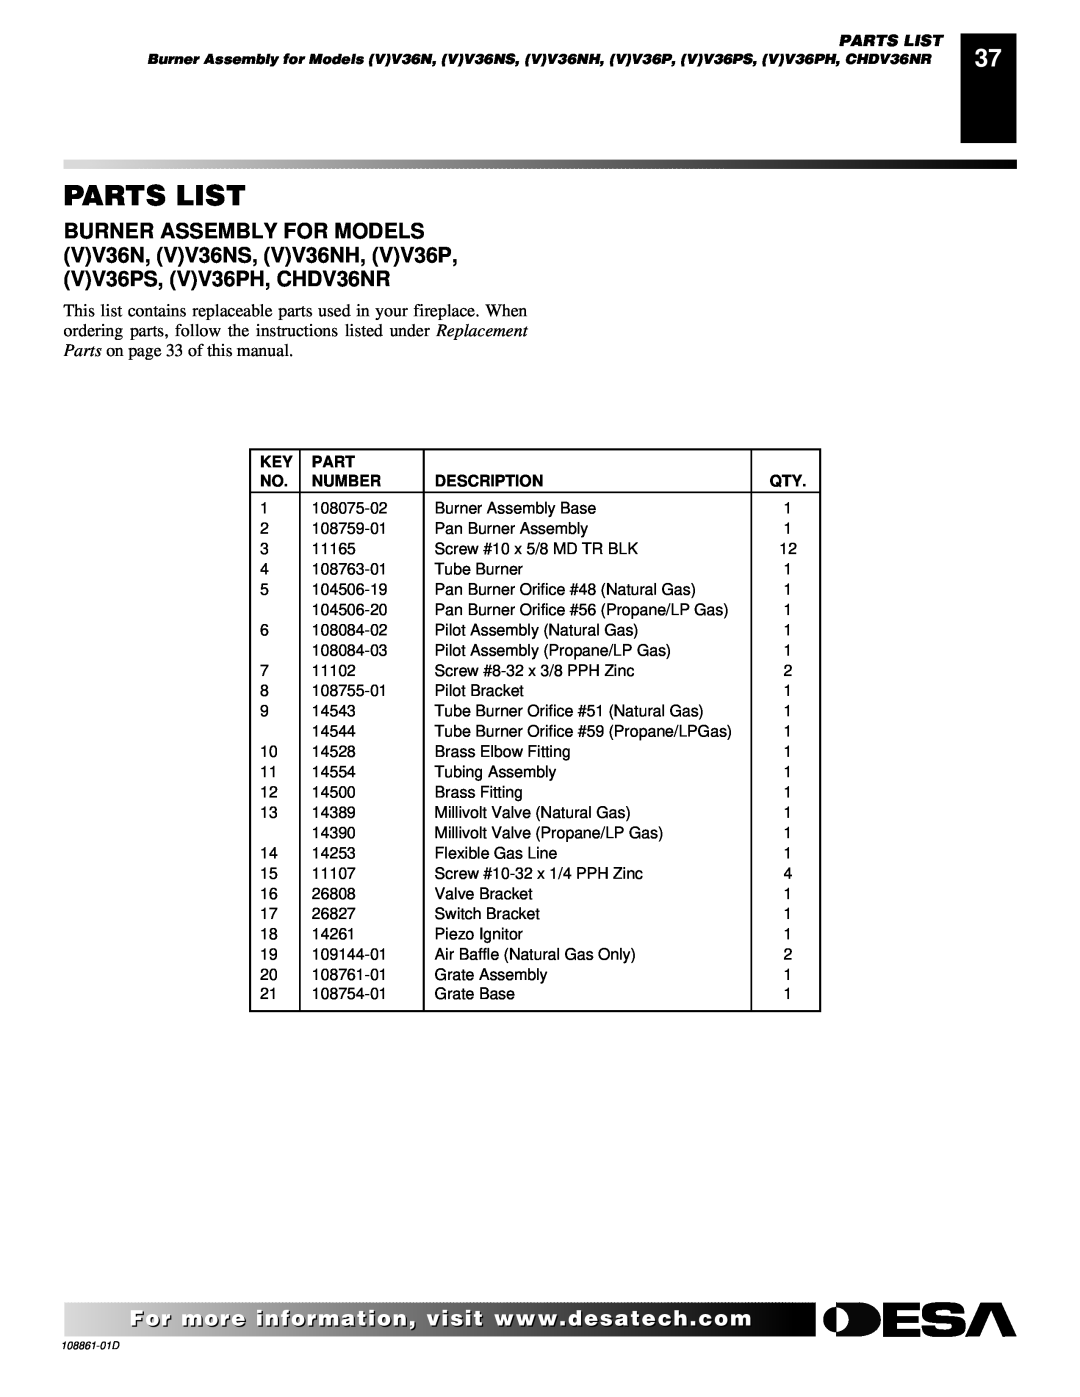 Desa (V)V36P, (V)V42P, (V)V42N, CHDV36NR, CHDV42NR installation manual Parts List, Number, Description 